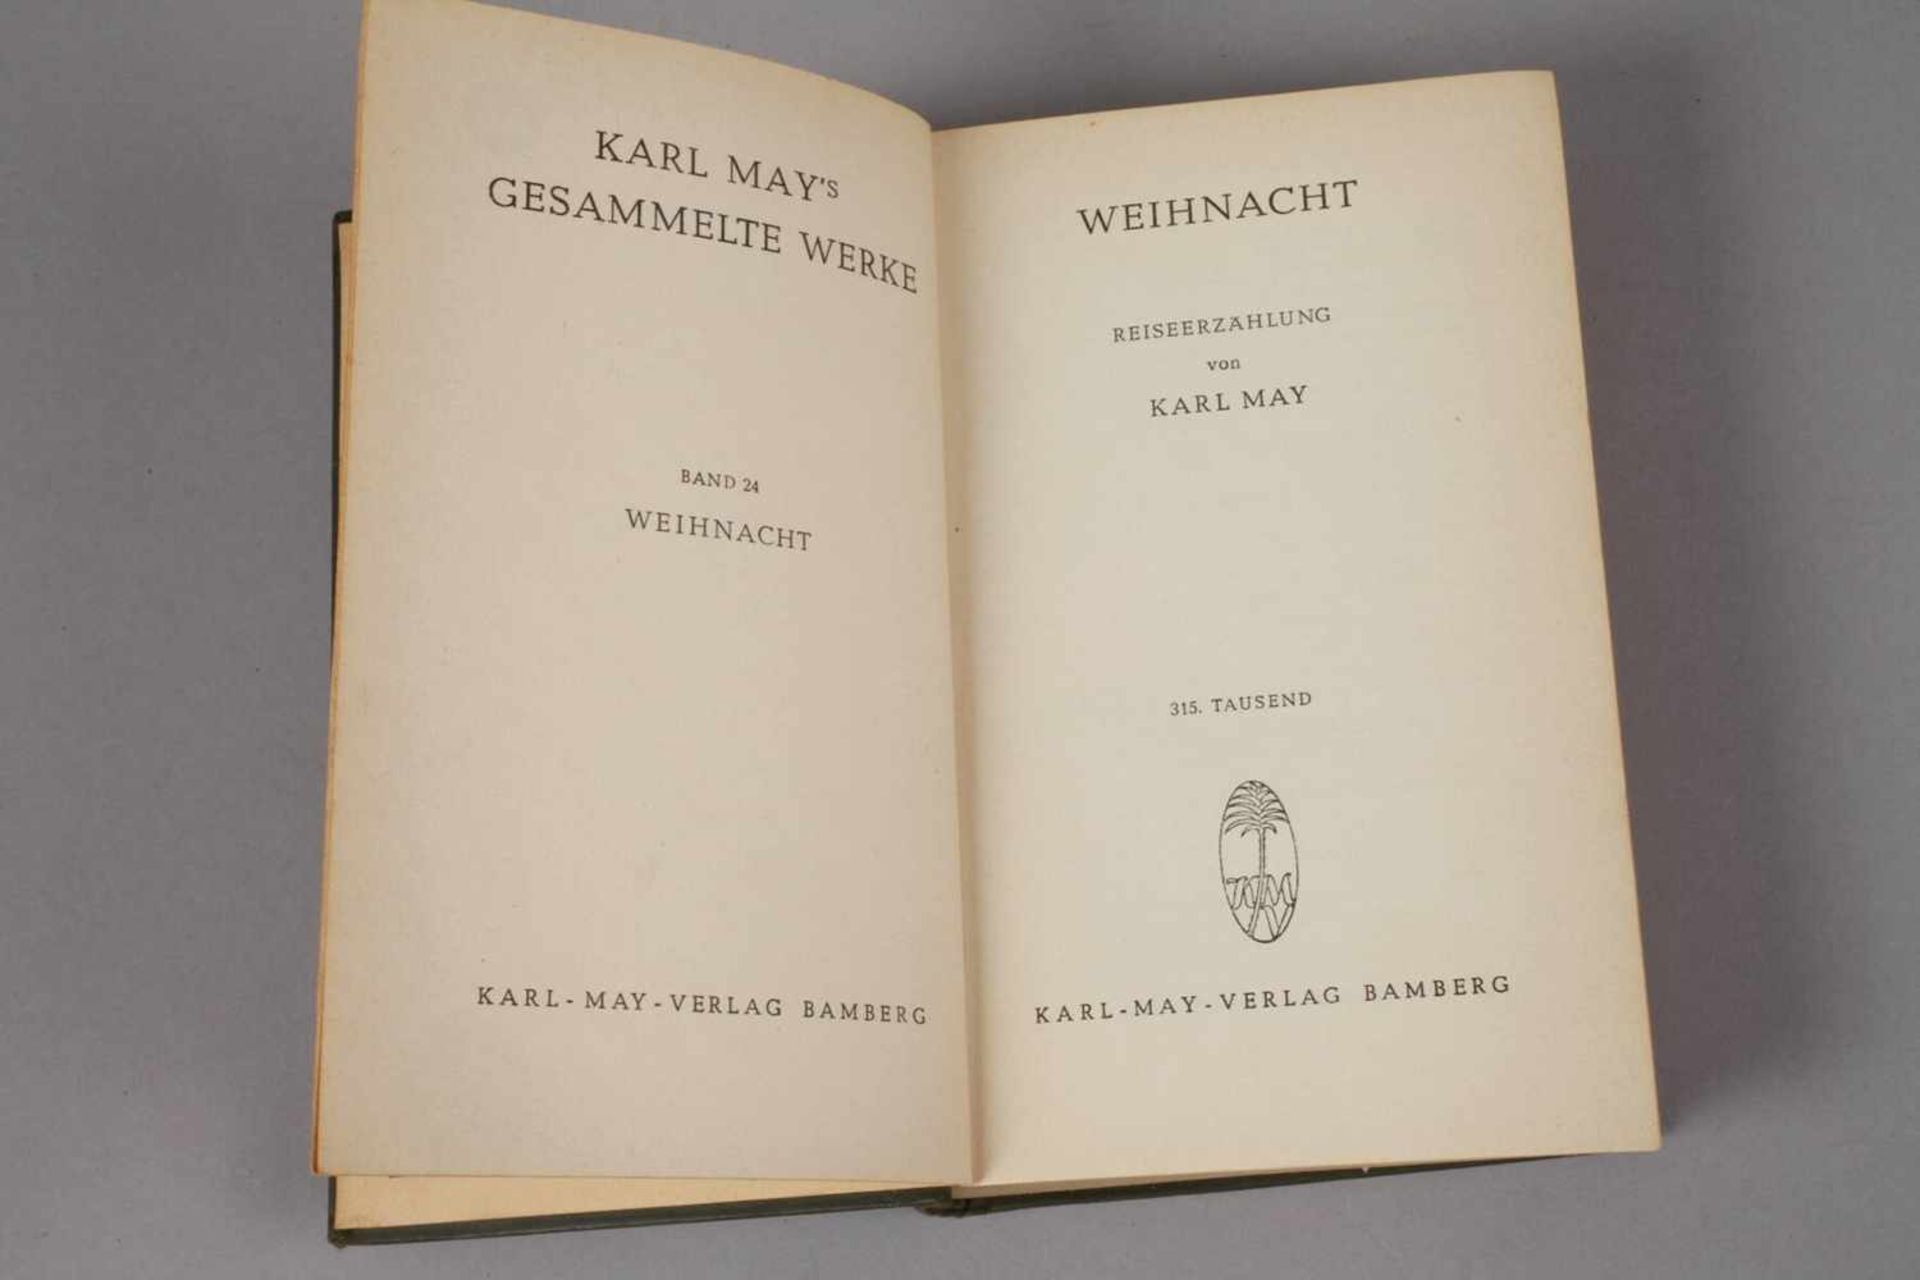 Karl May, WeihnachtKarl-May-Verlag Bamberg 1953, Format Kl. 8°, 500 S., Leineneinband, normale - Bild 3 aus 3